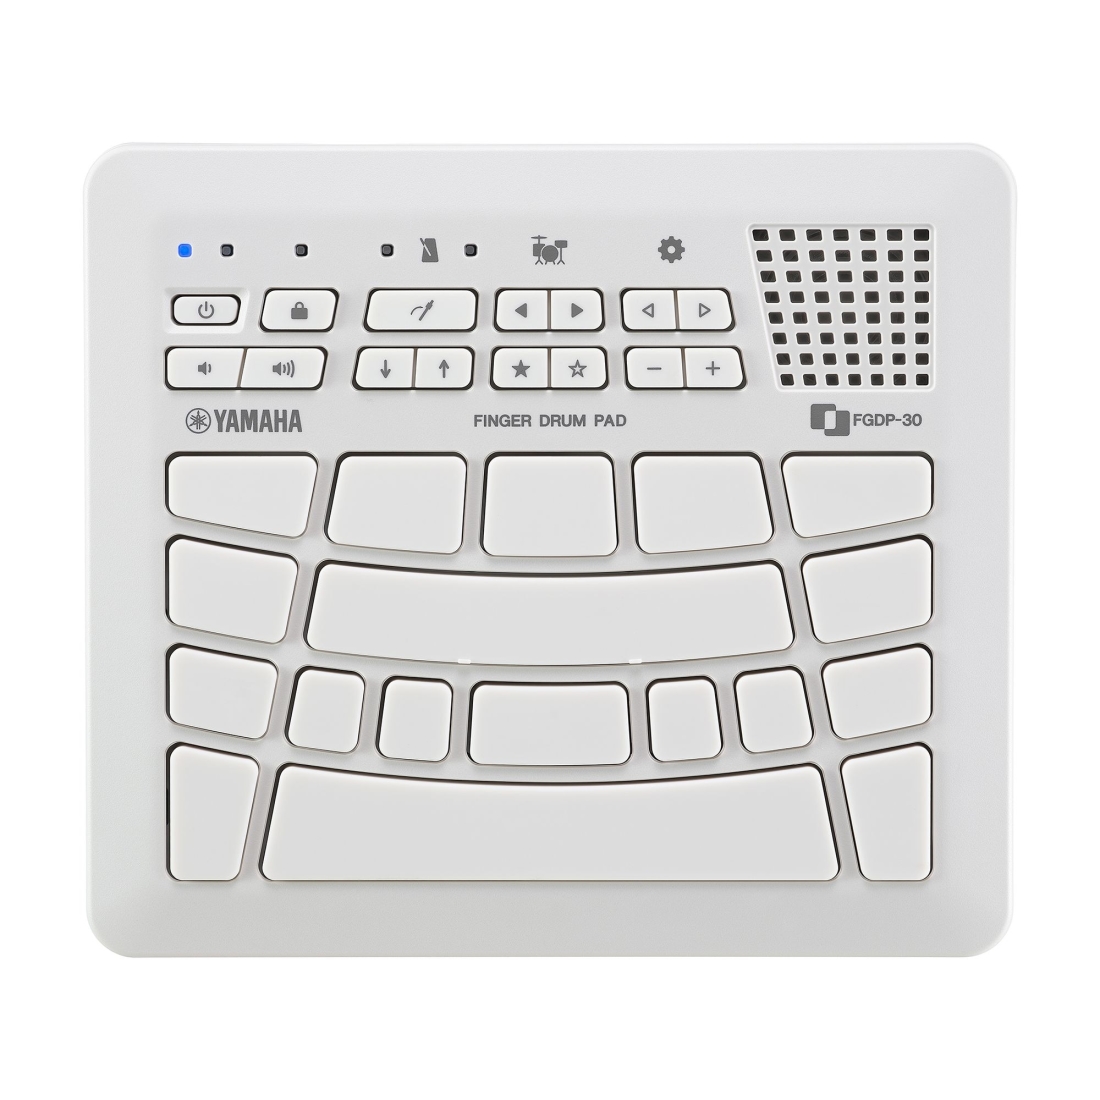 FGDP-30 Finger Drum Pad - White